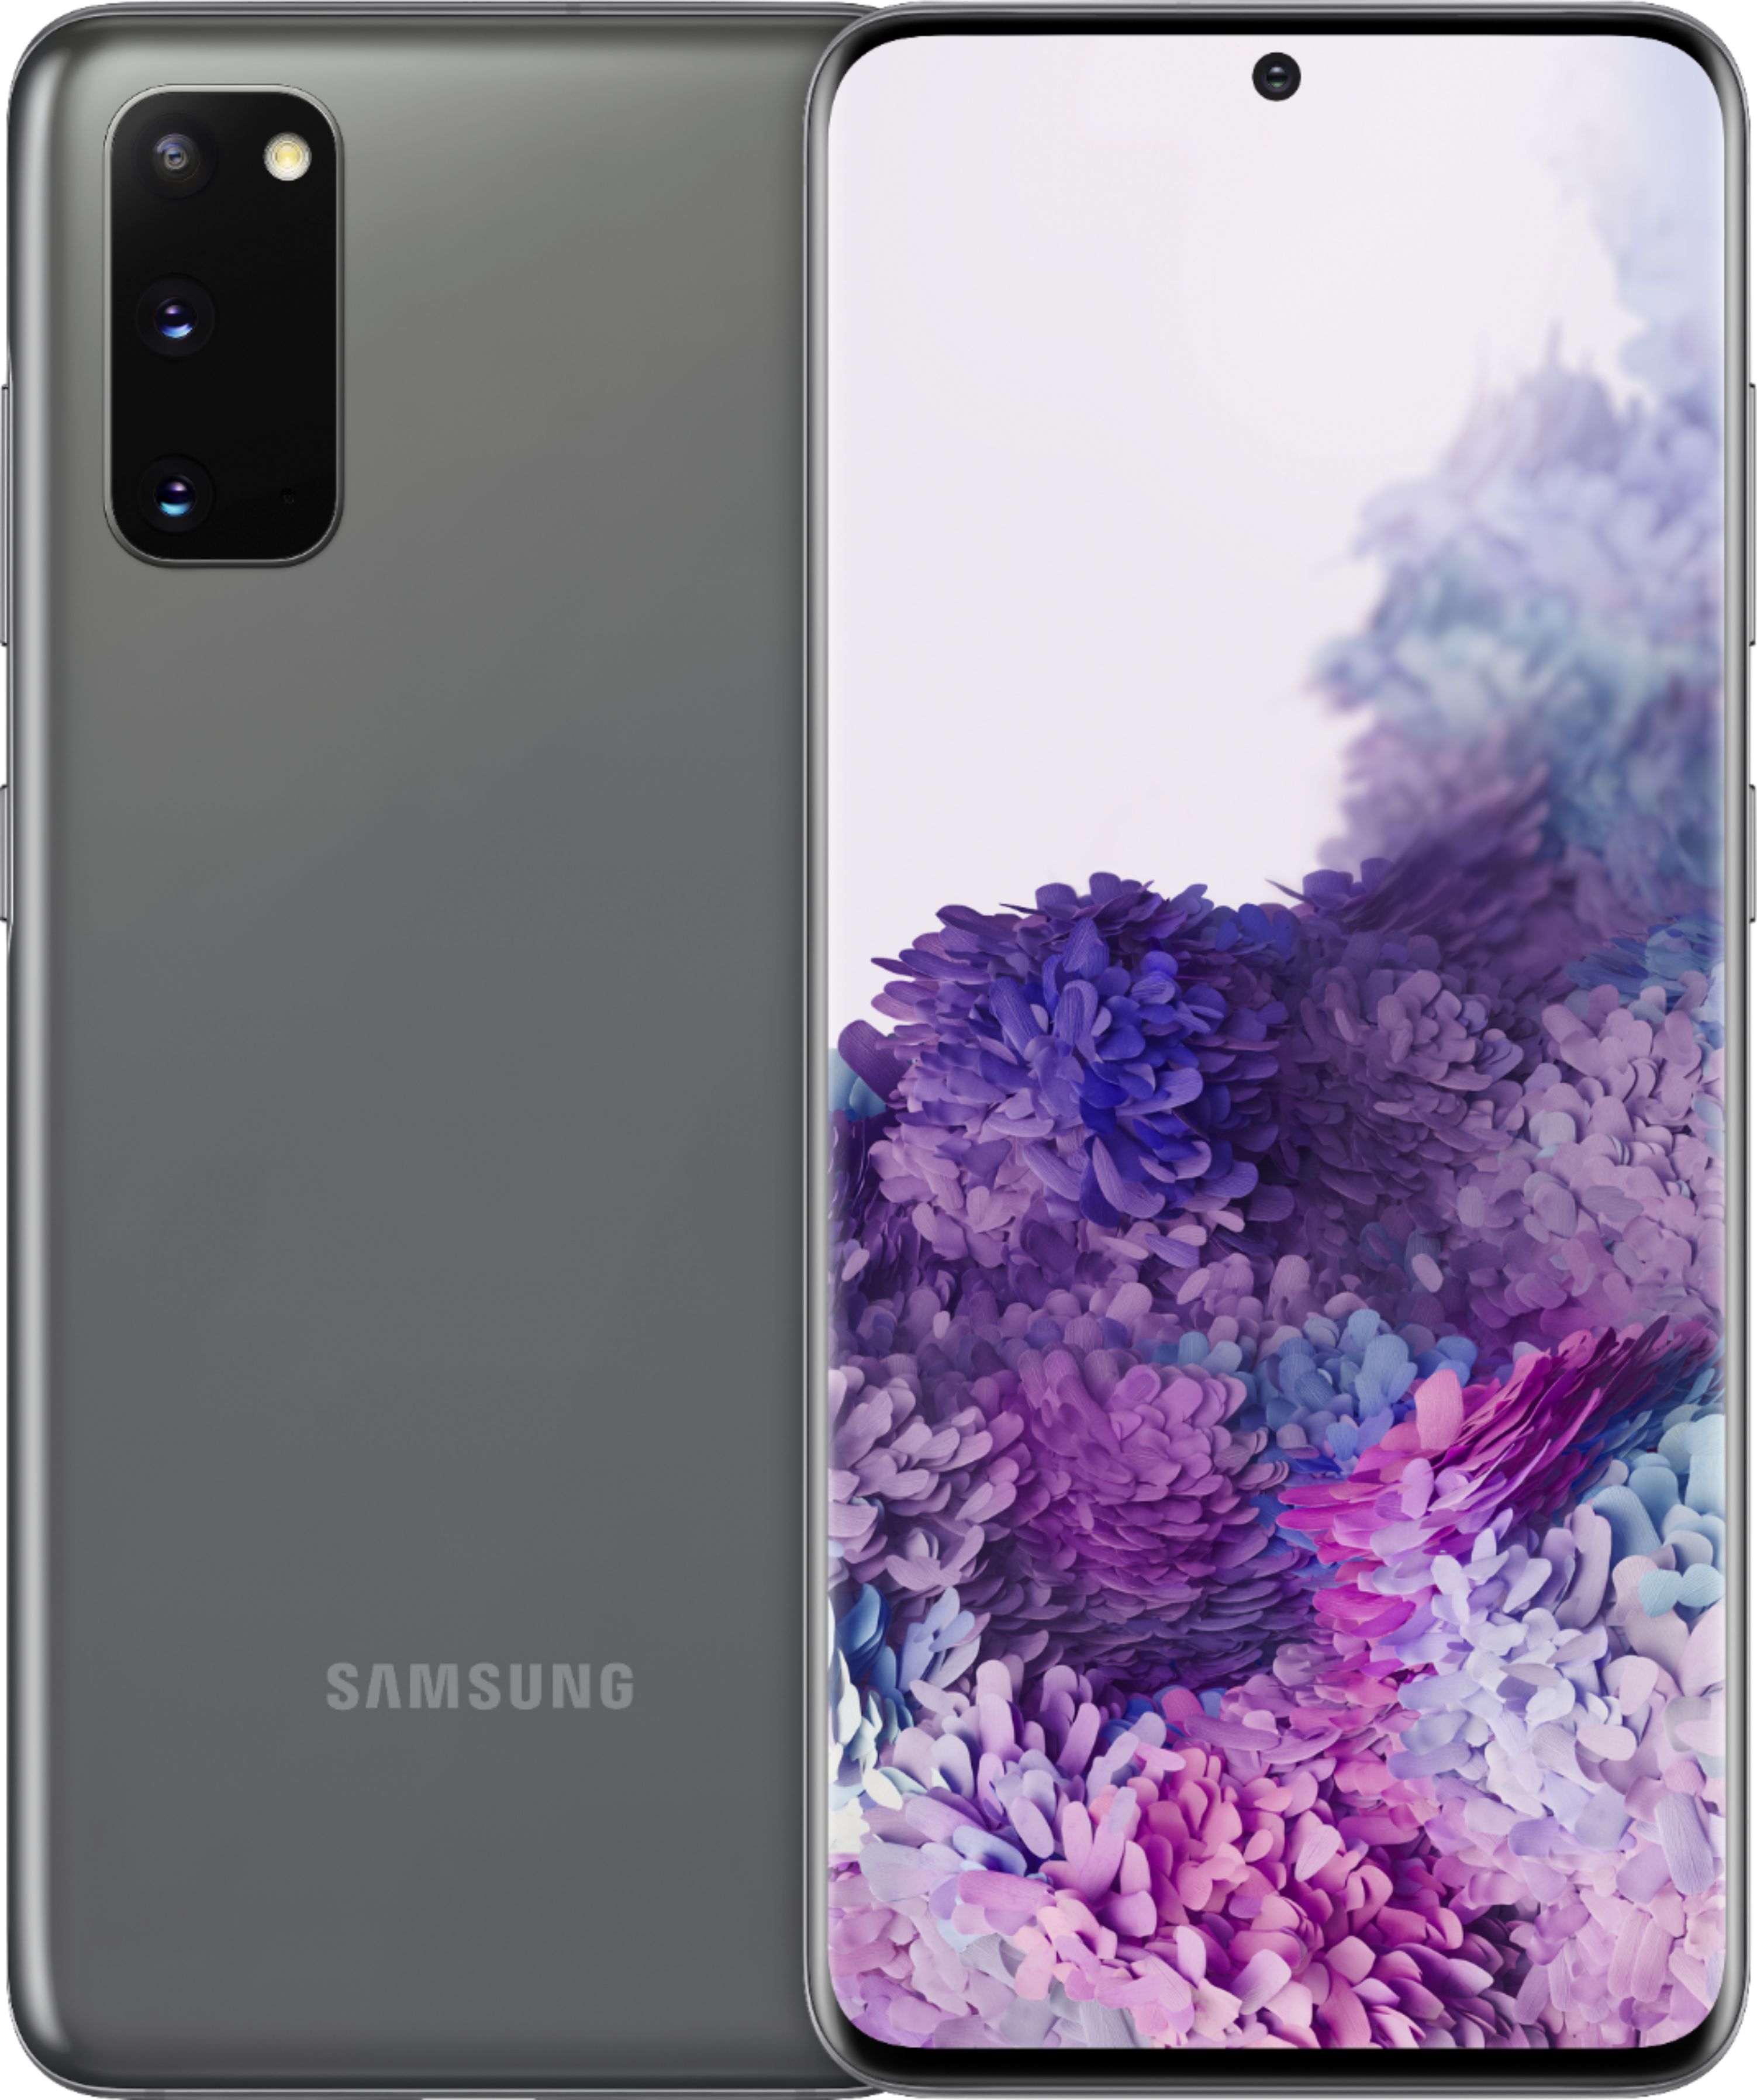 Best Buy: Samsung Galaxy S20 5G UW 128GB Cosmic Gray (Verizon) SMG981VZAV